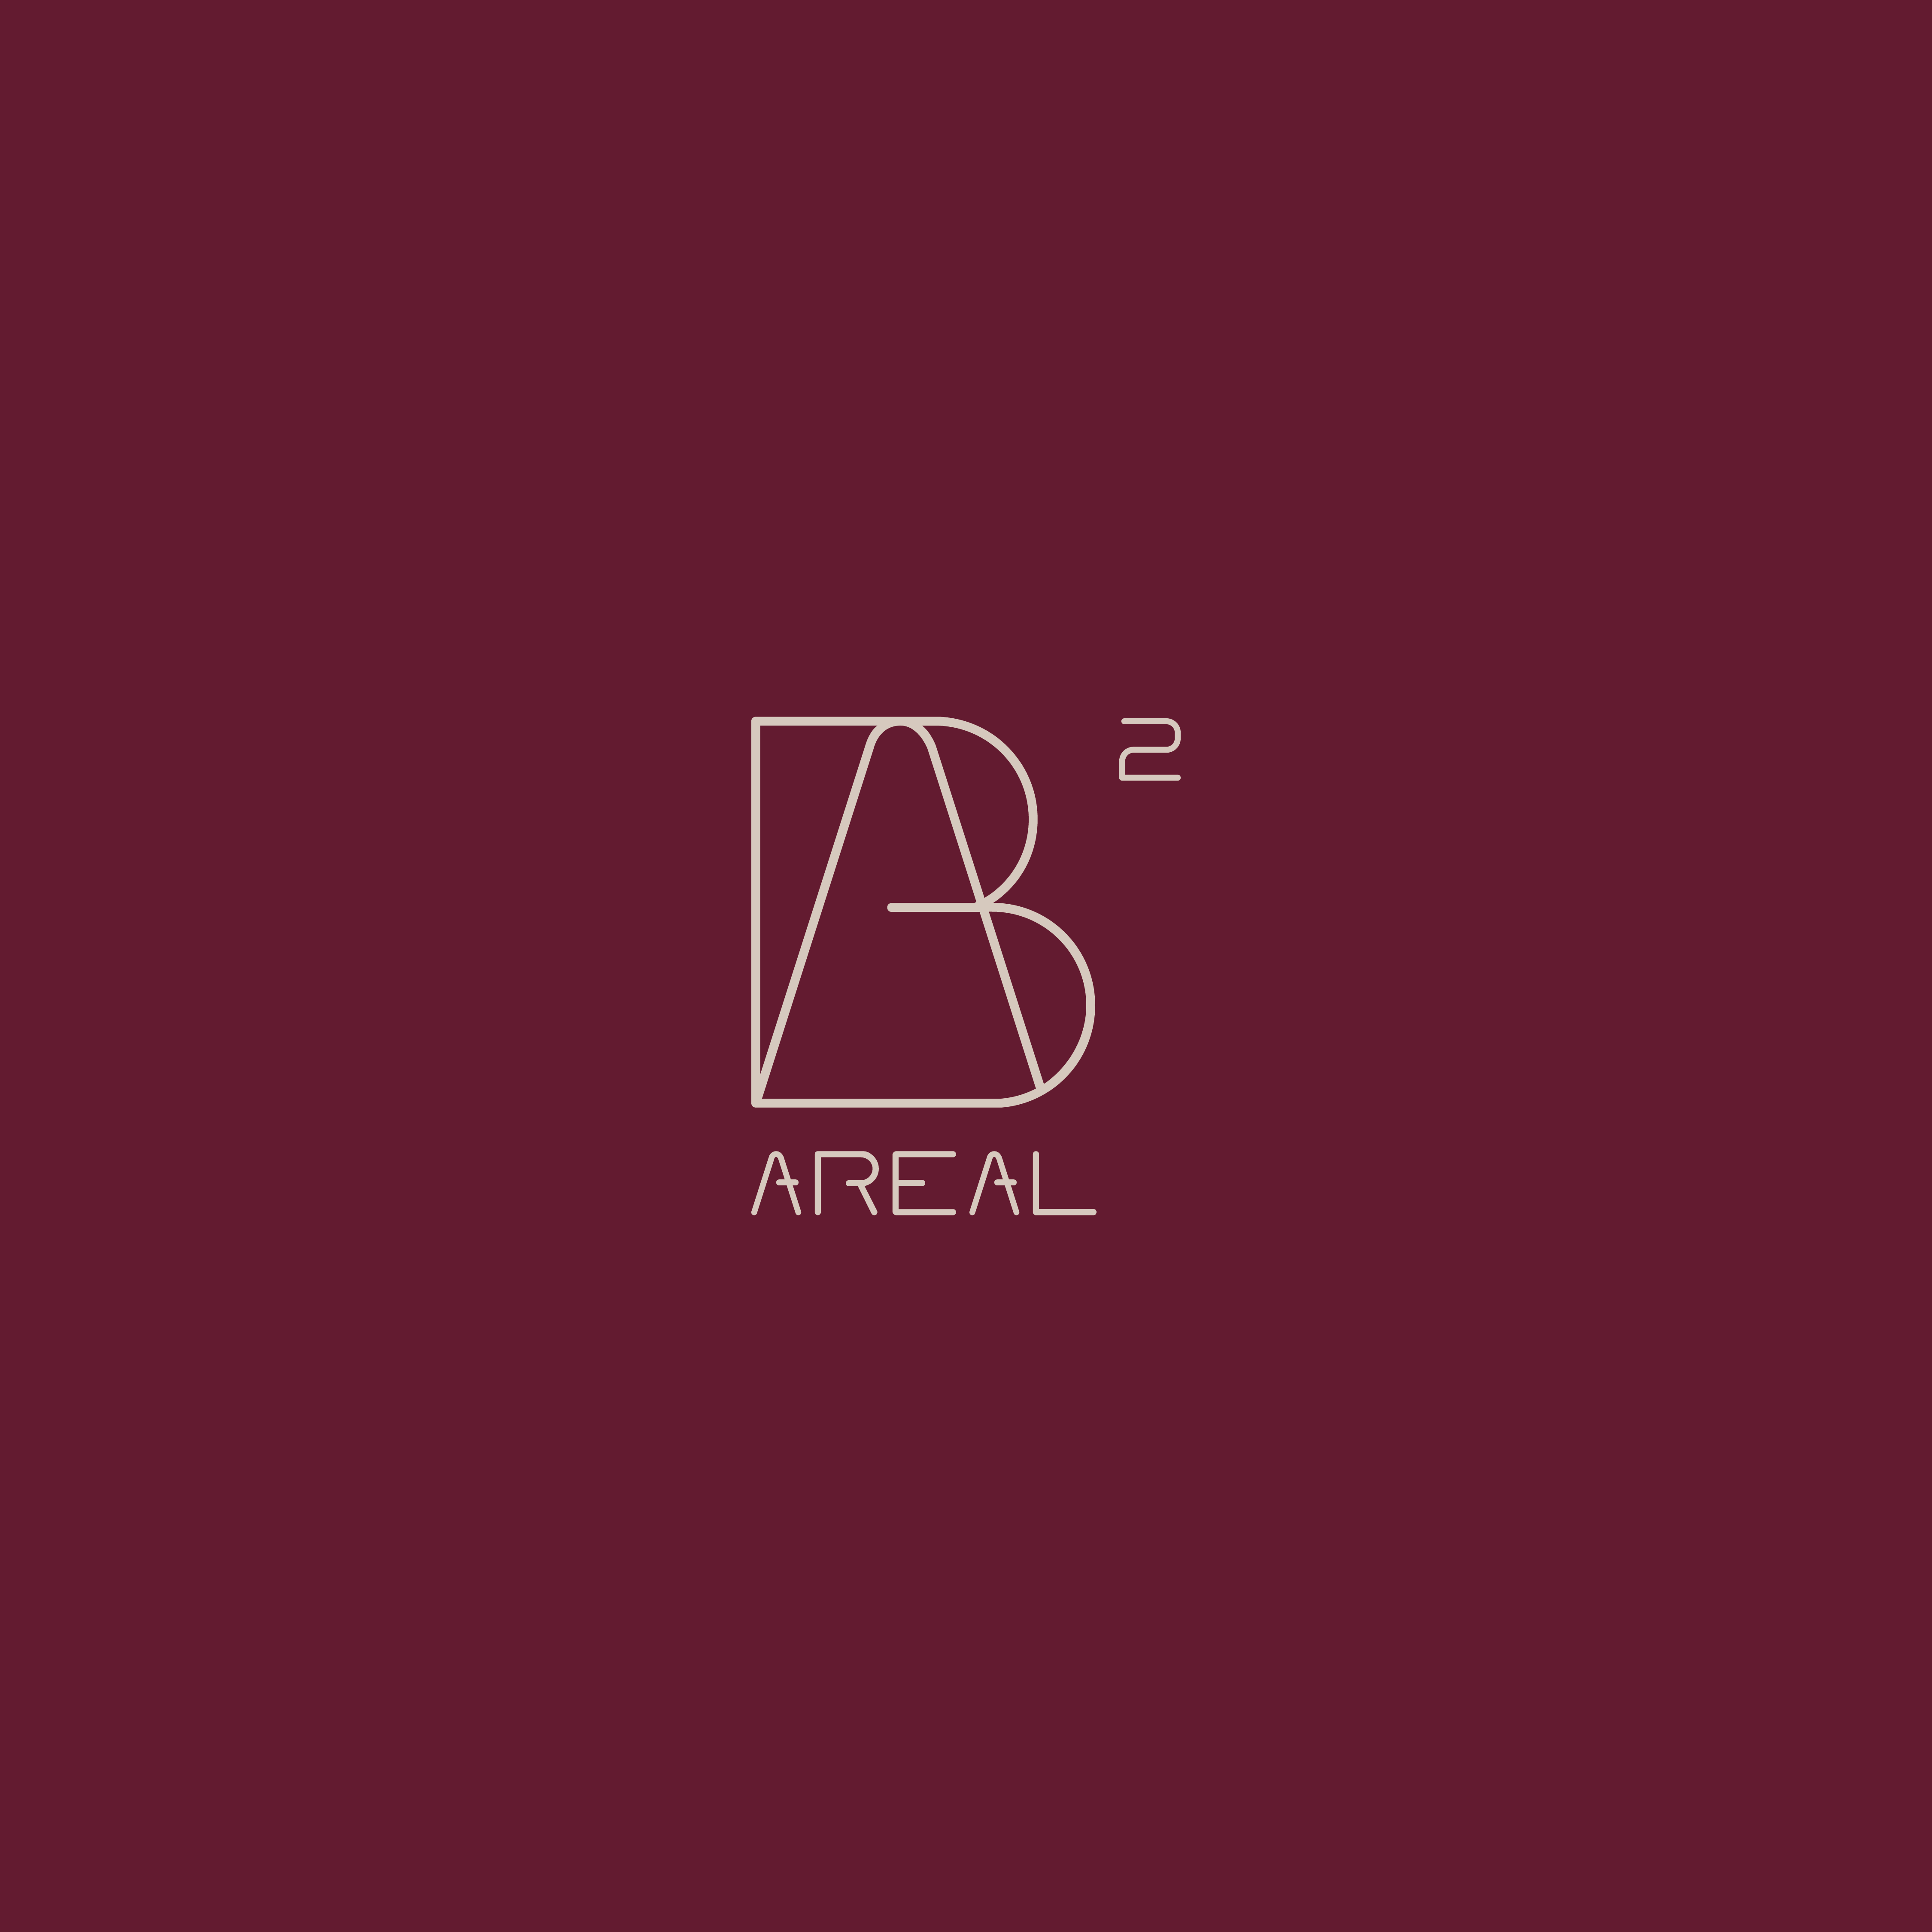 Das Brandicon des Berardi Areals 2, welches durch ein Logodesign für kleine Unternehmen entwickelt wurde.